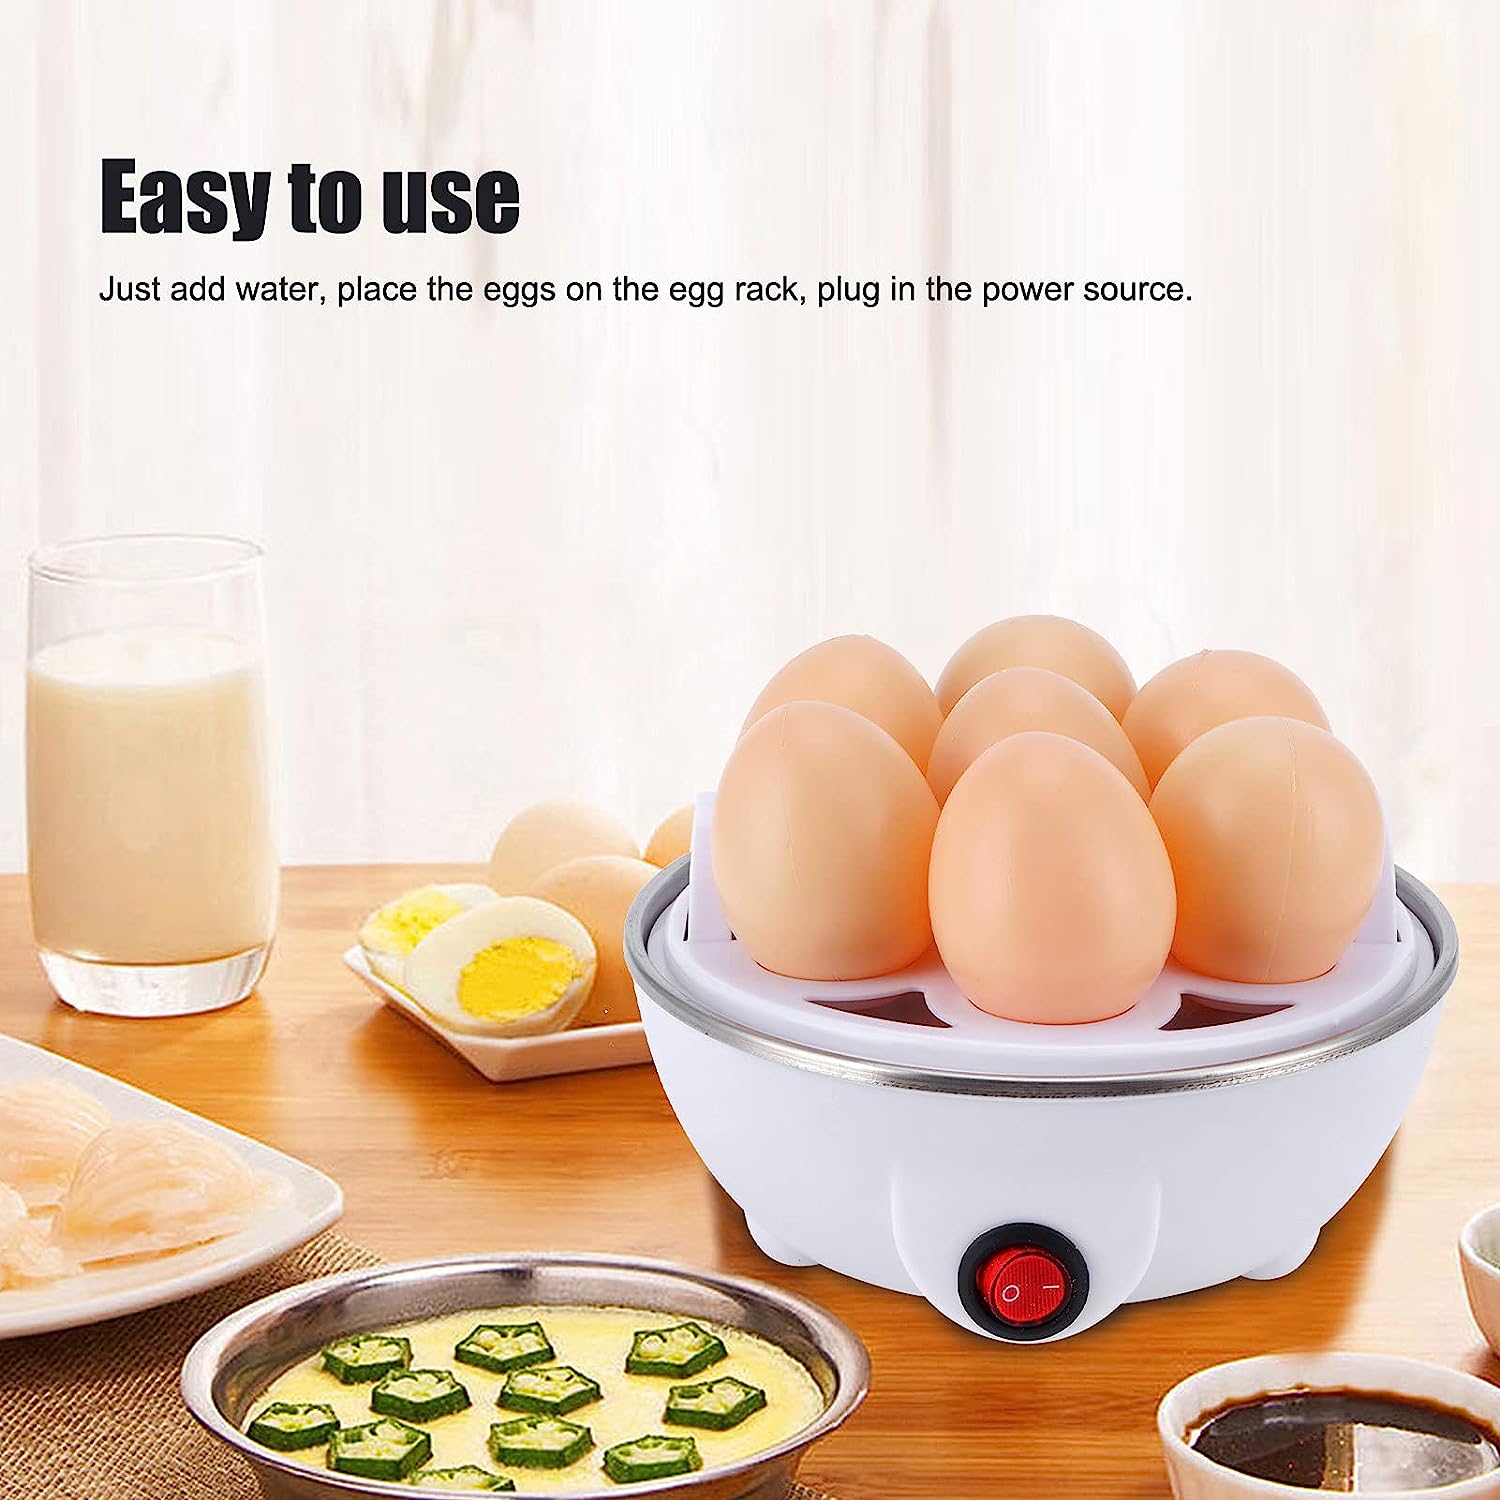 Pixa bouilloire à œufs électrique - PixaMaoc 